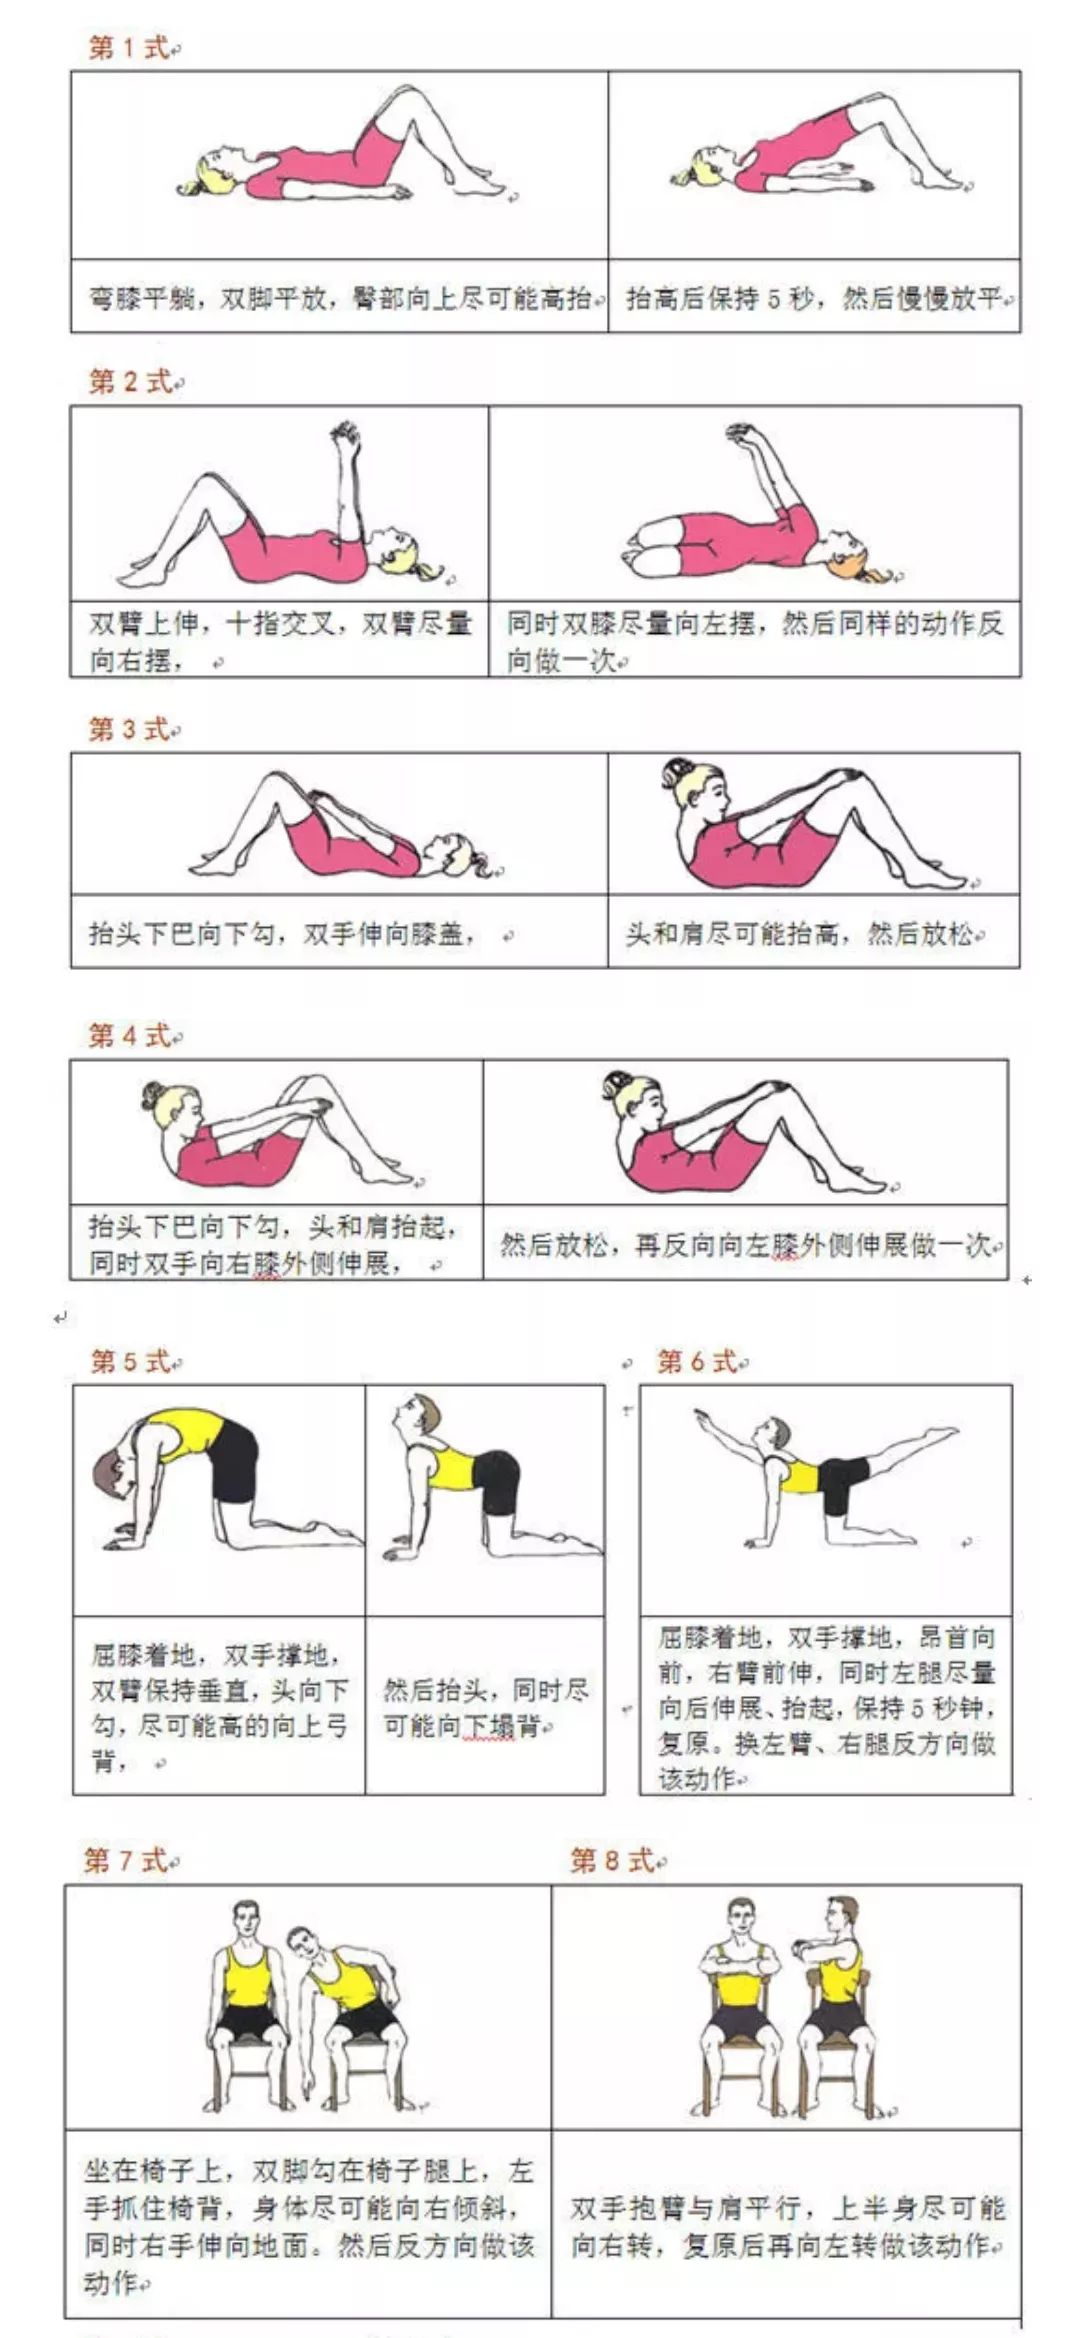 中医健康养生(no1484)强直性脊柱炎锻炼图谱